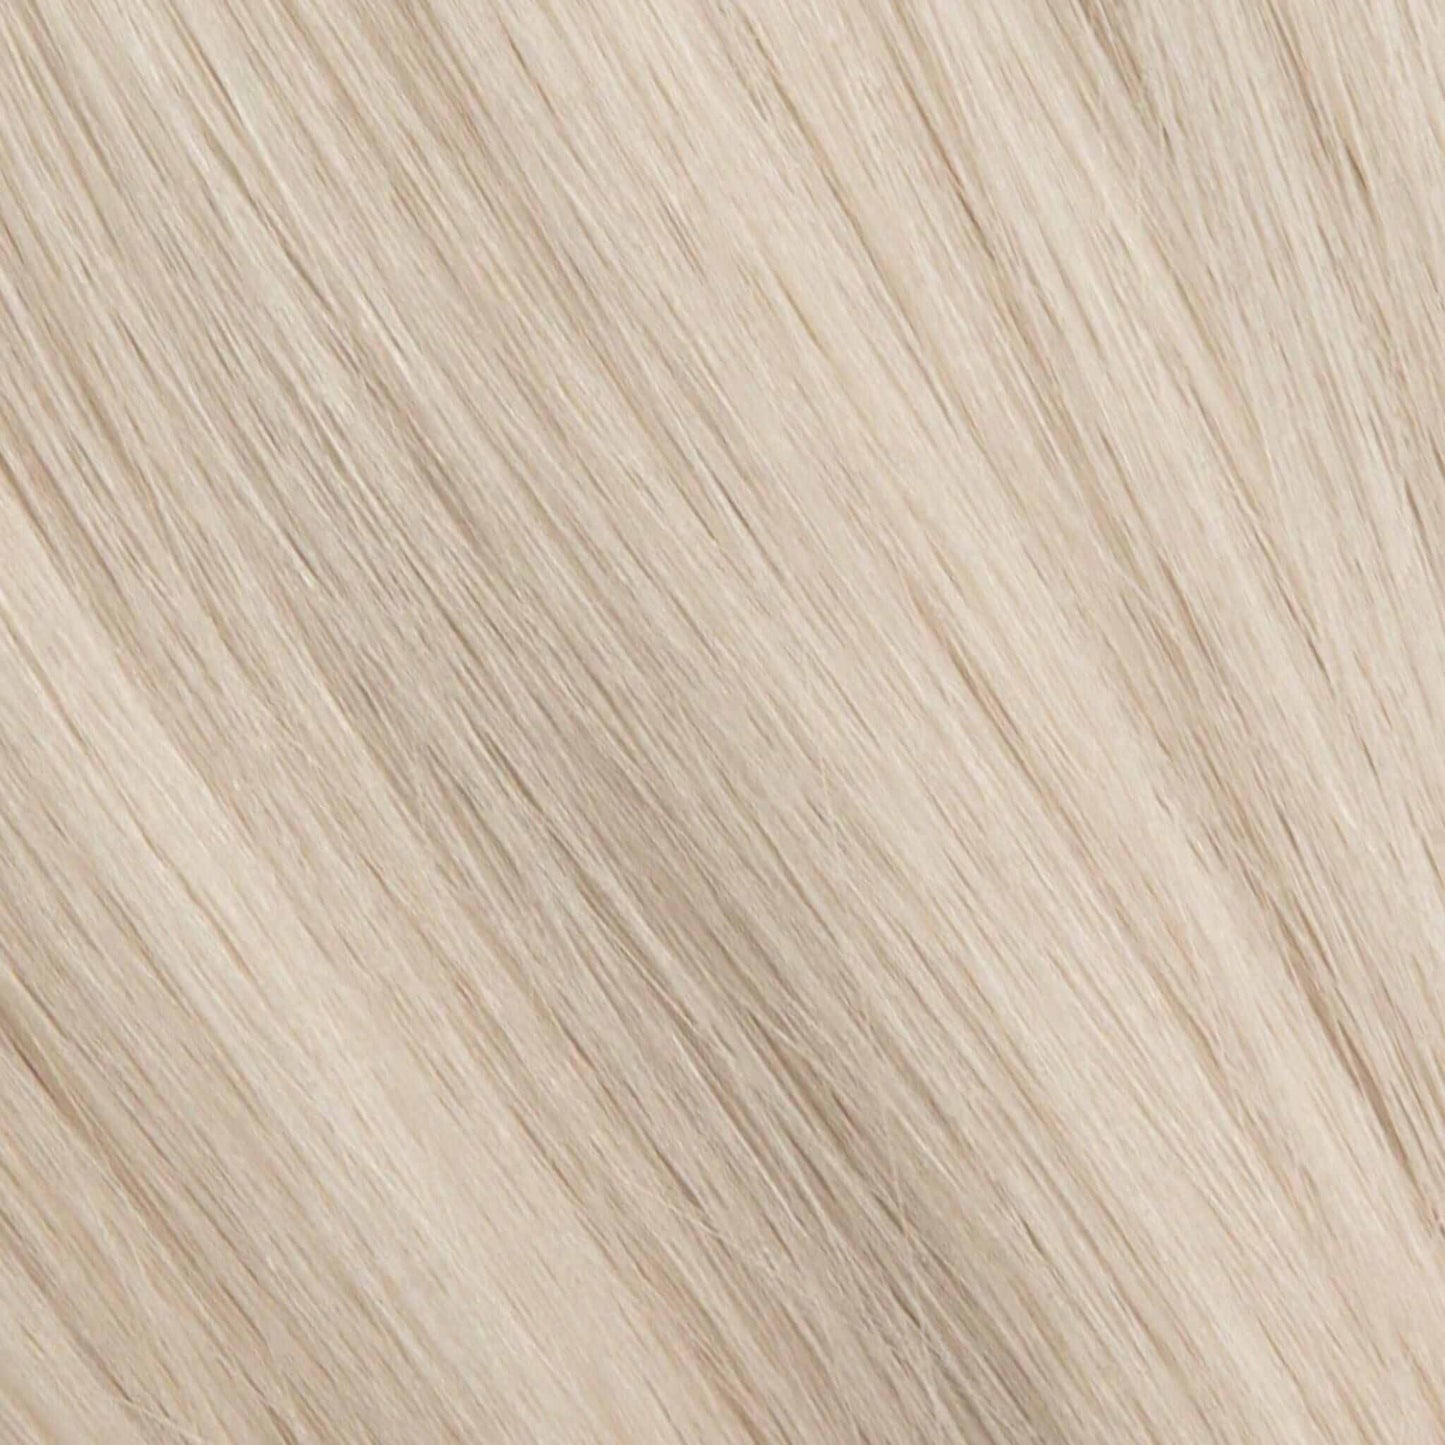 Machine-Tied Weft 16" 120g Single Donor Virgin - #80 White Blonde